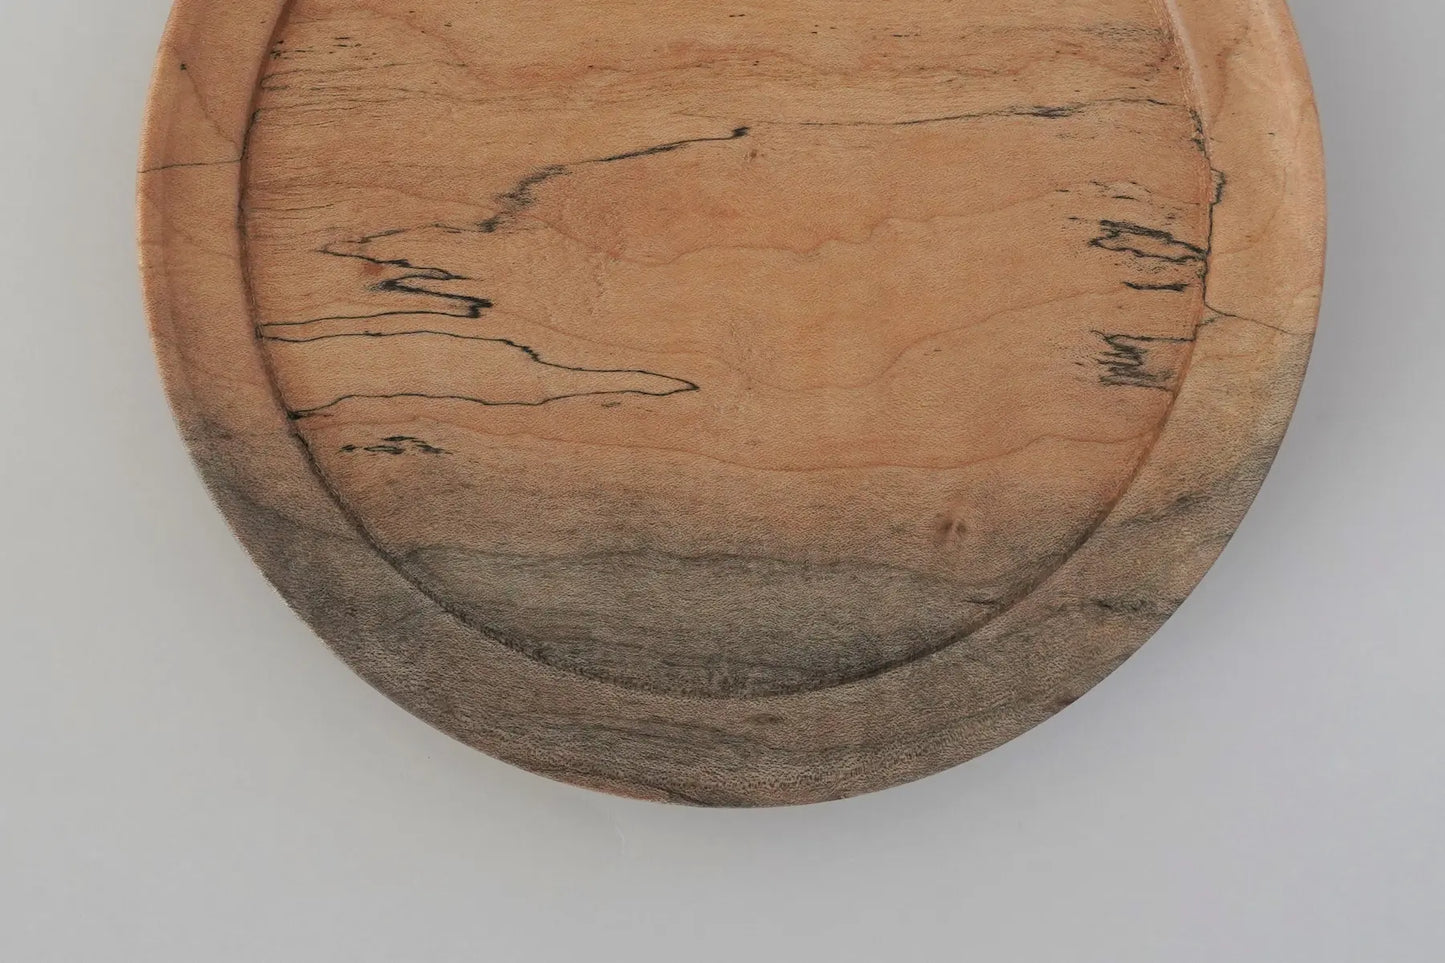 【木と暮らし松弥】楓 スポルテッド杢目 平皿 15cm×1.5cm (木目-1)